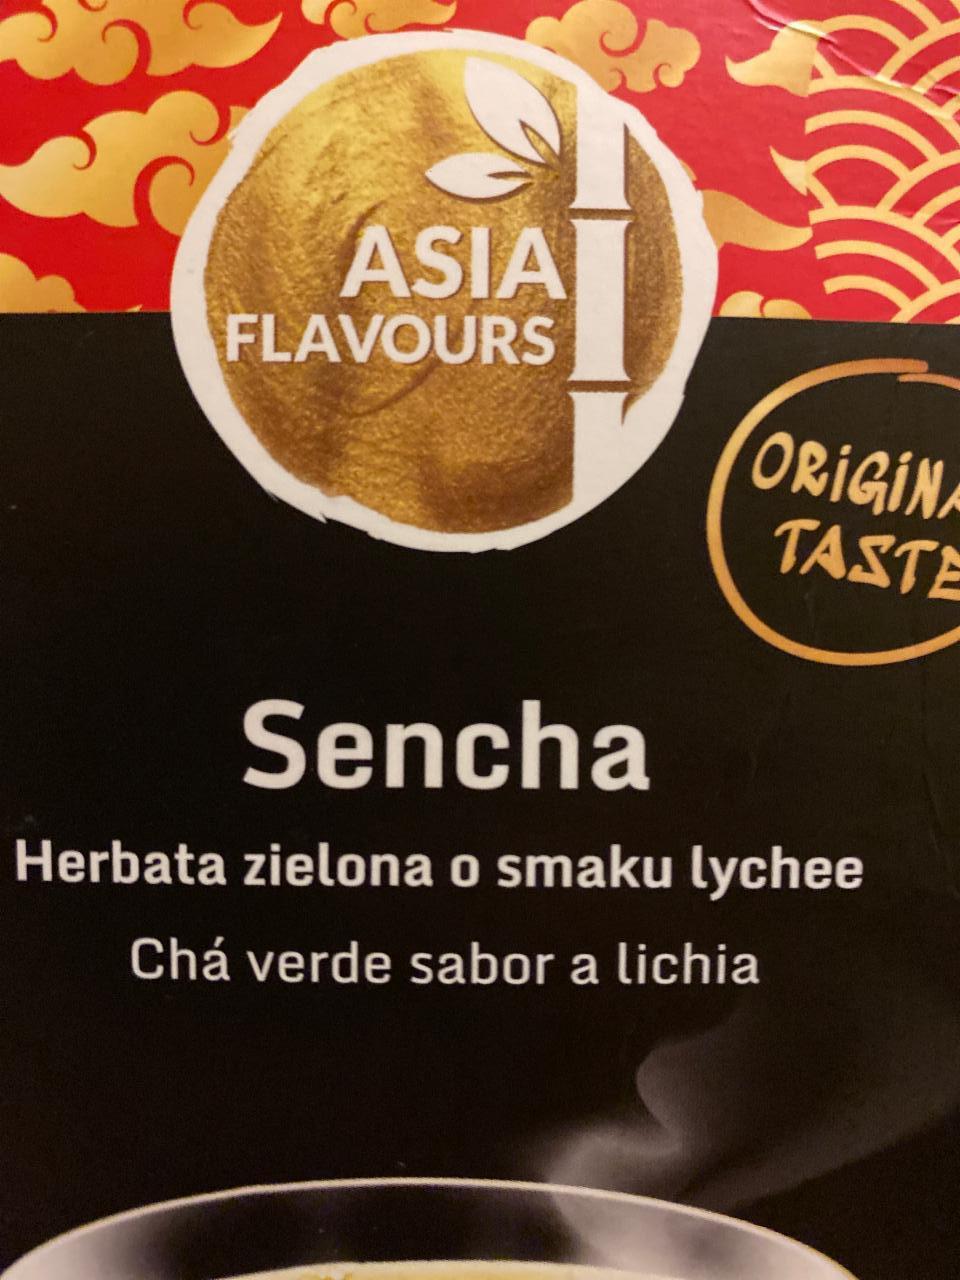 Zdjęcia - Sencha herbata zielona o smaku lychee Asia Flavours